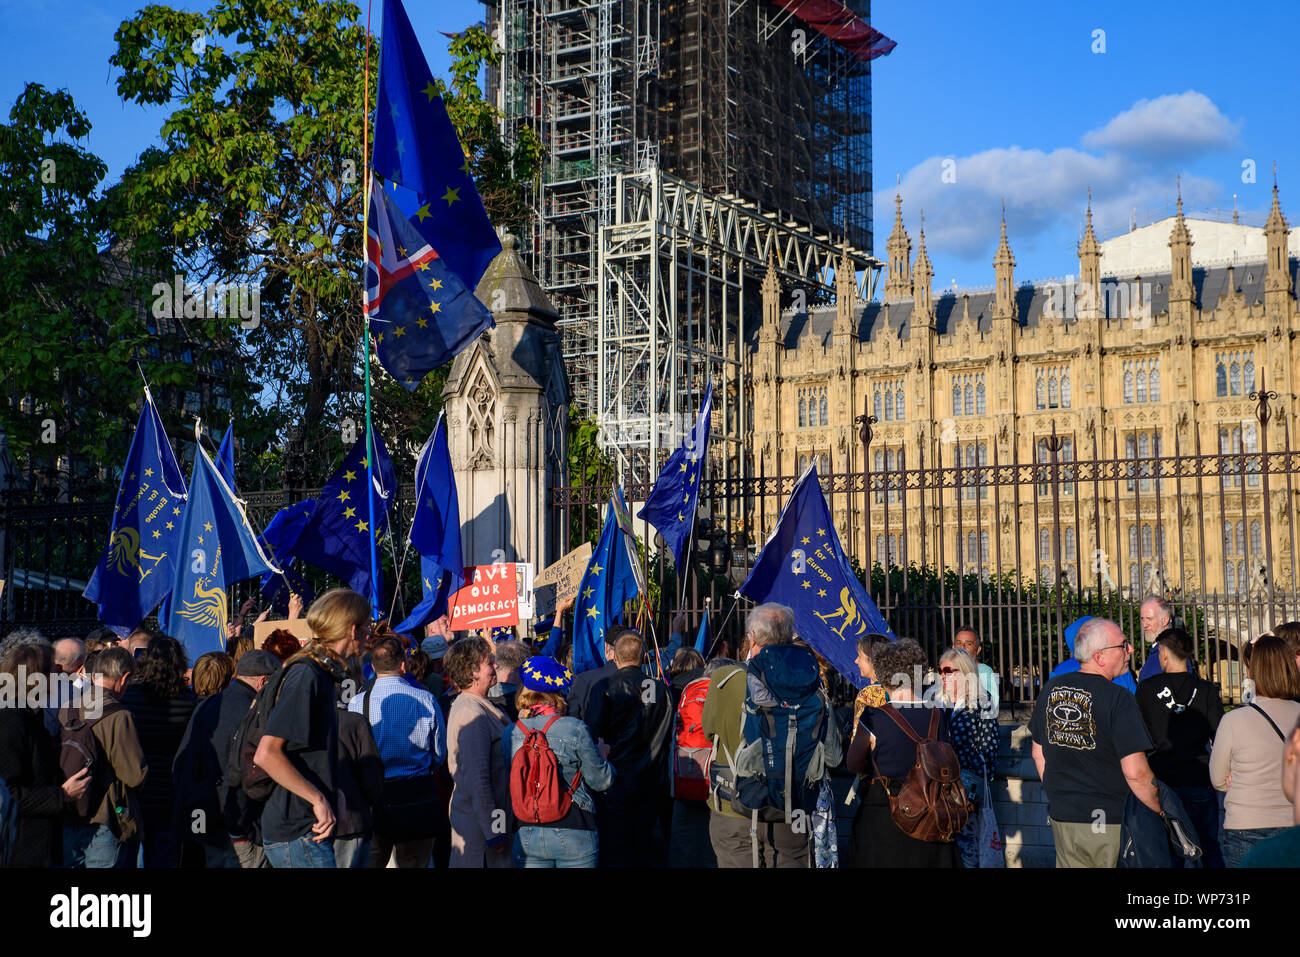 Personnes qui protestaient contre la non-deal Brexit, Boris Johnson, le Premier Ministre du Royaume-Uni, et le gouvernement du Royaume-Uni à la place du Parlement, Londres Banque D'Images